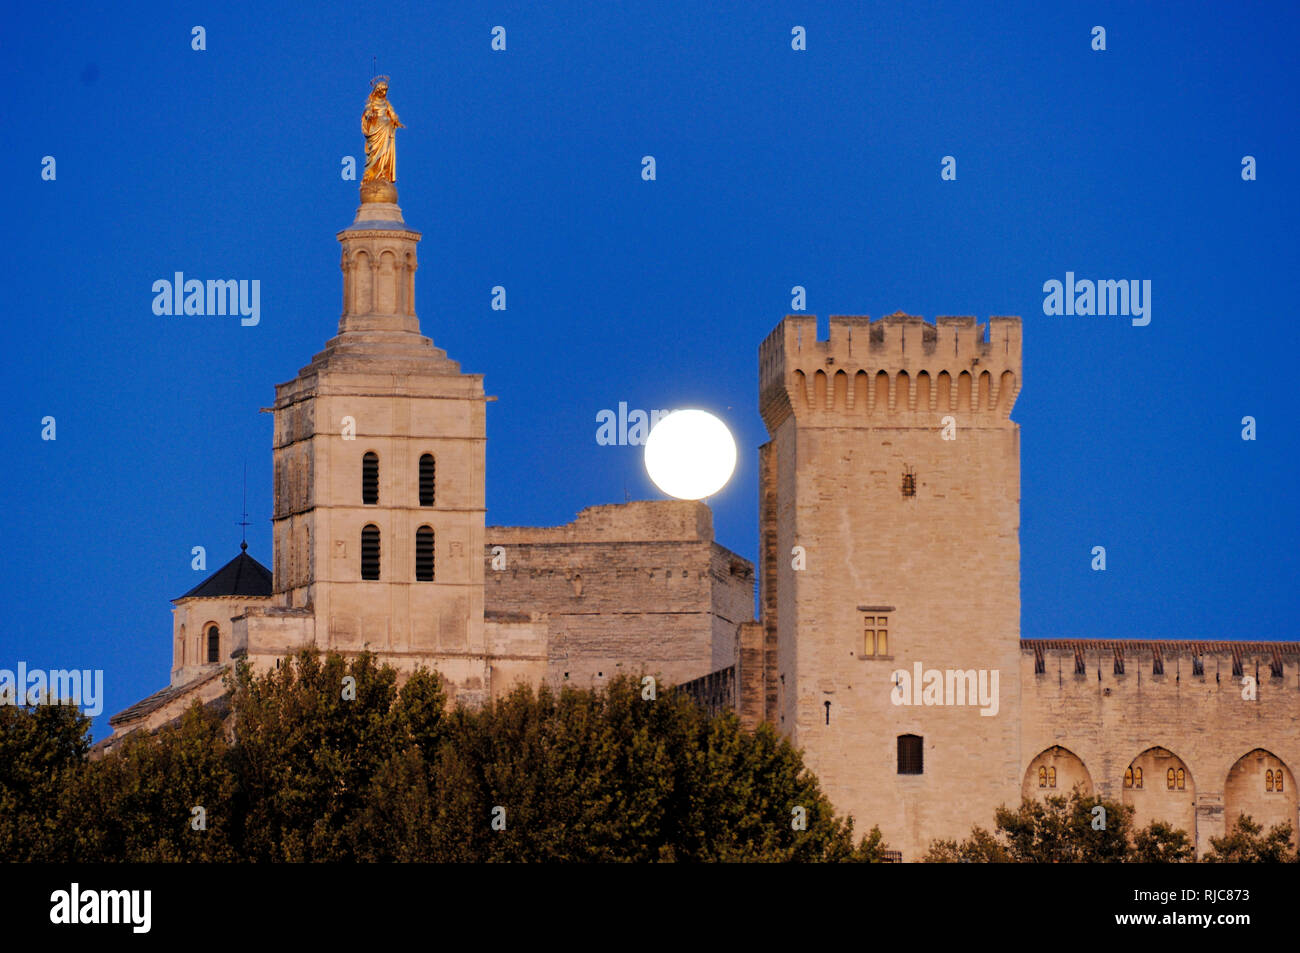 La lune, les phases de pleine lune ou sur le Palais des Papes, Palais des Papes ou le Palais des Papes Avignon Vaucluse provence france Banque D'Images